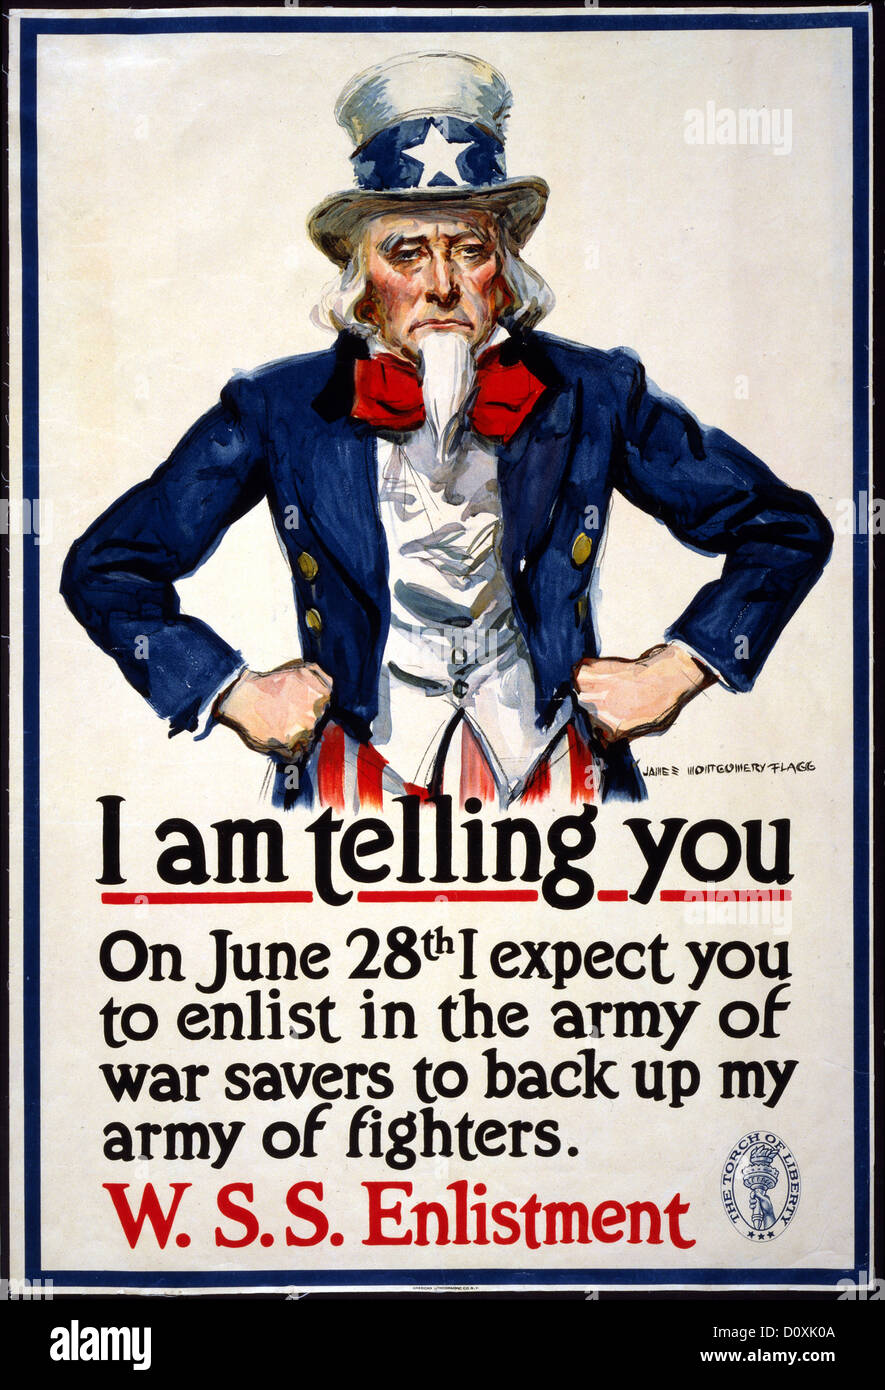 La I Guerra Mundial, Americana, la contratación, el cartel, el Tío Sam, la guerra de ahorristas, back up, alistamiento de 1917, EE.UU. Foto de stock